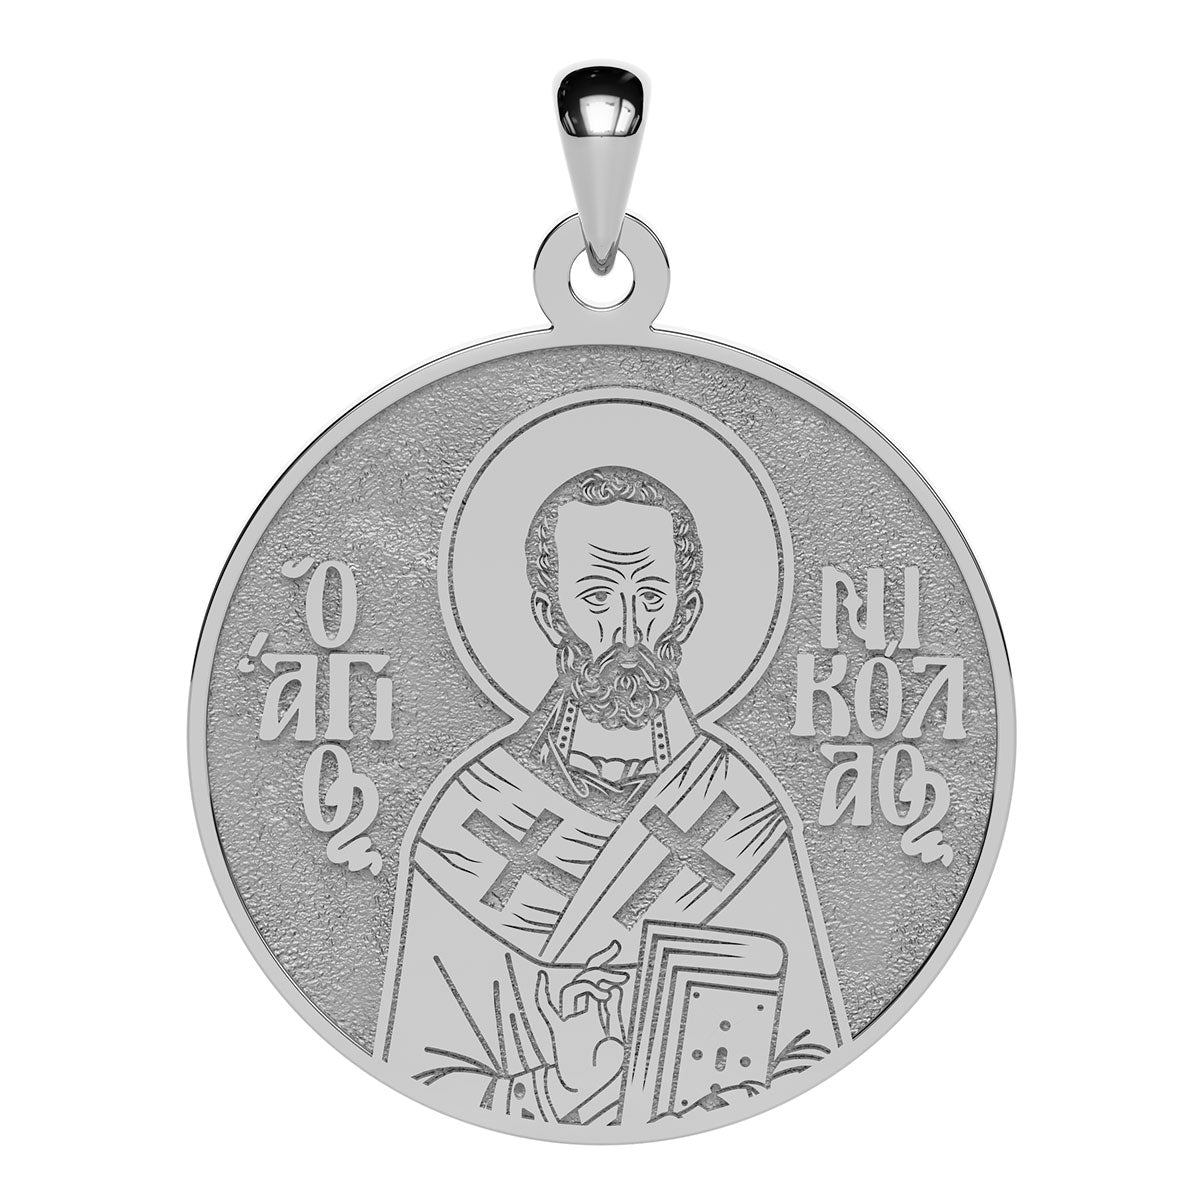 Saint Nicholas Greek Orthodox Icon Round Medal